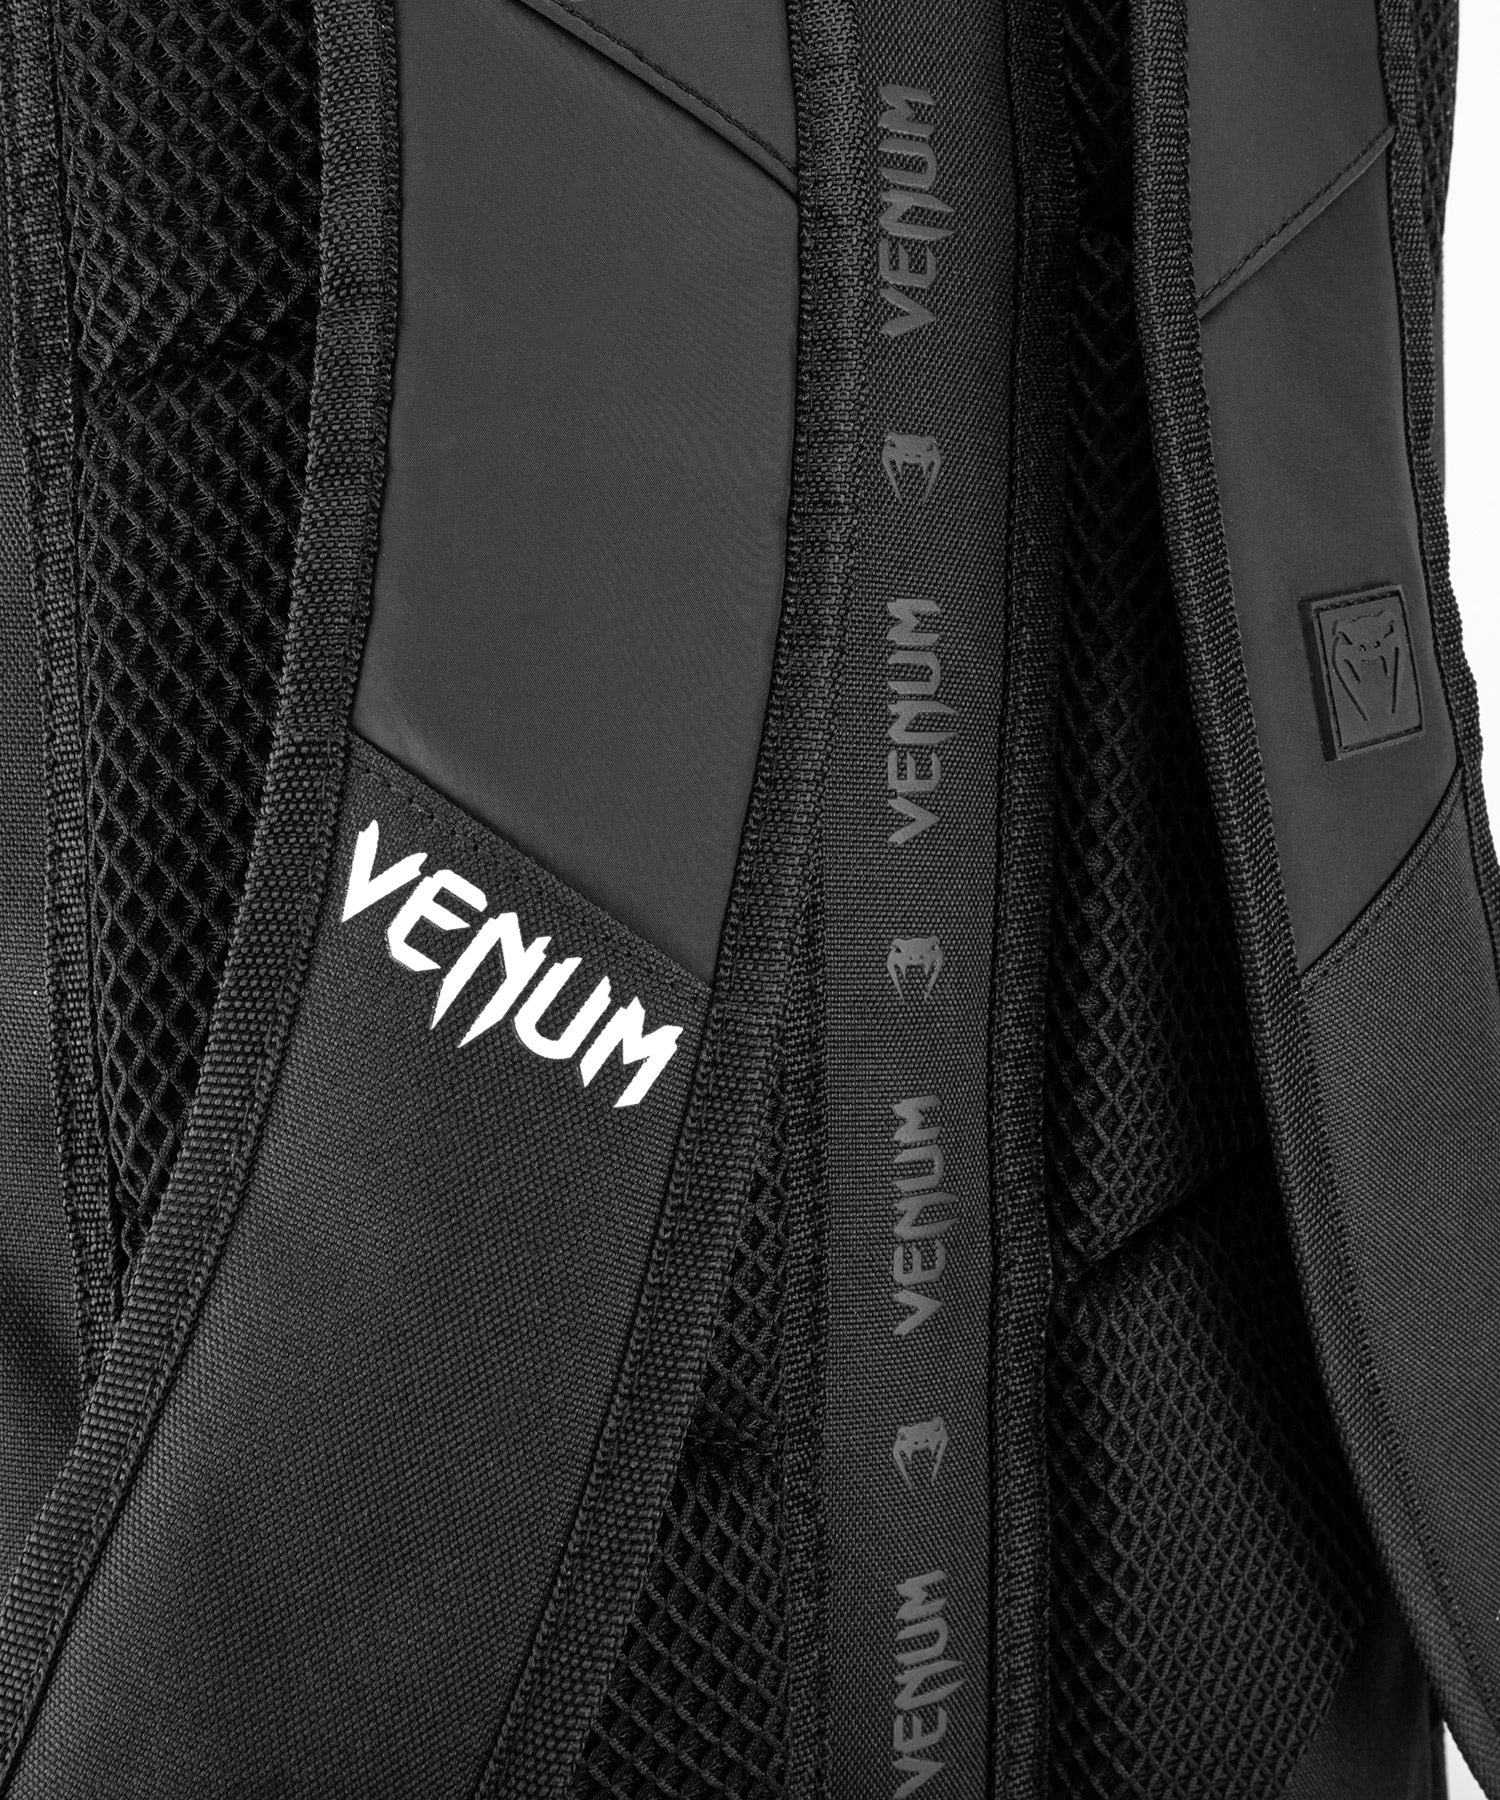 Venum - Challenger Xtrem Evo BackPack